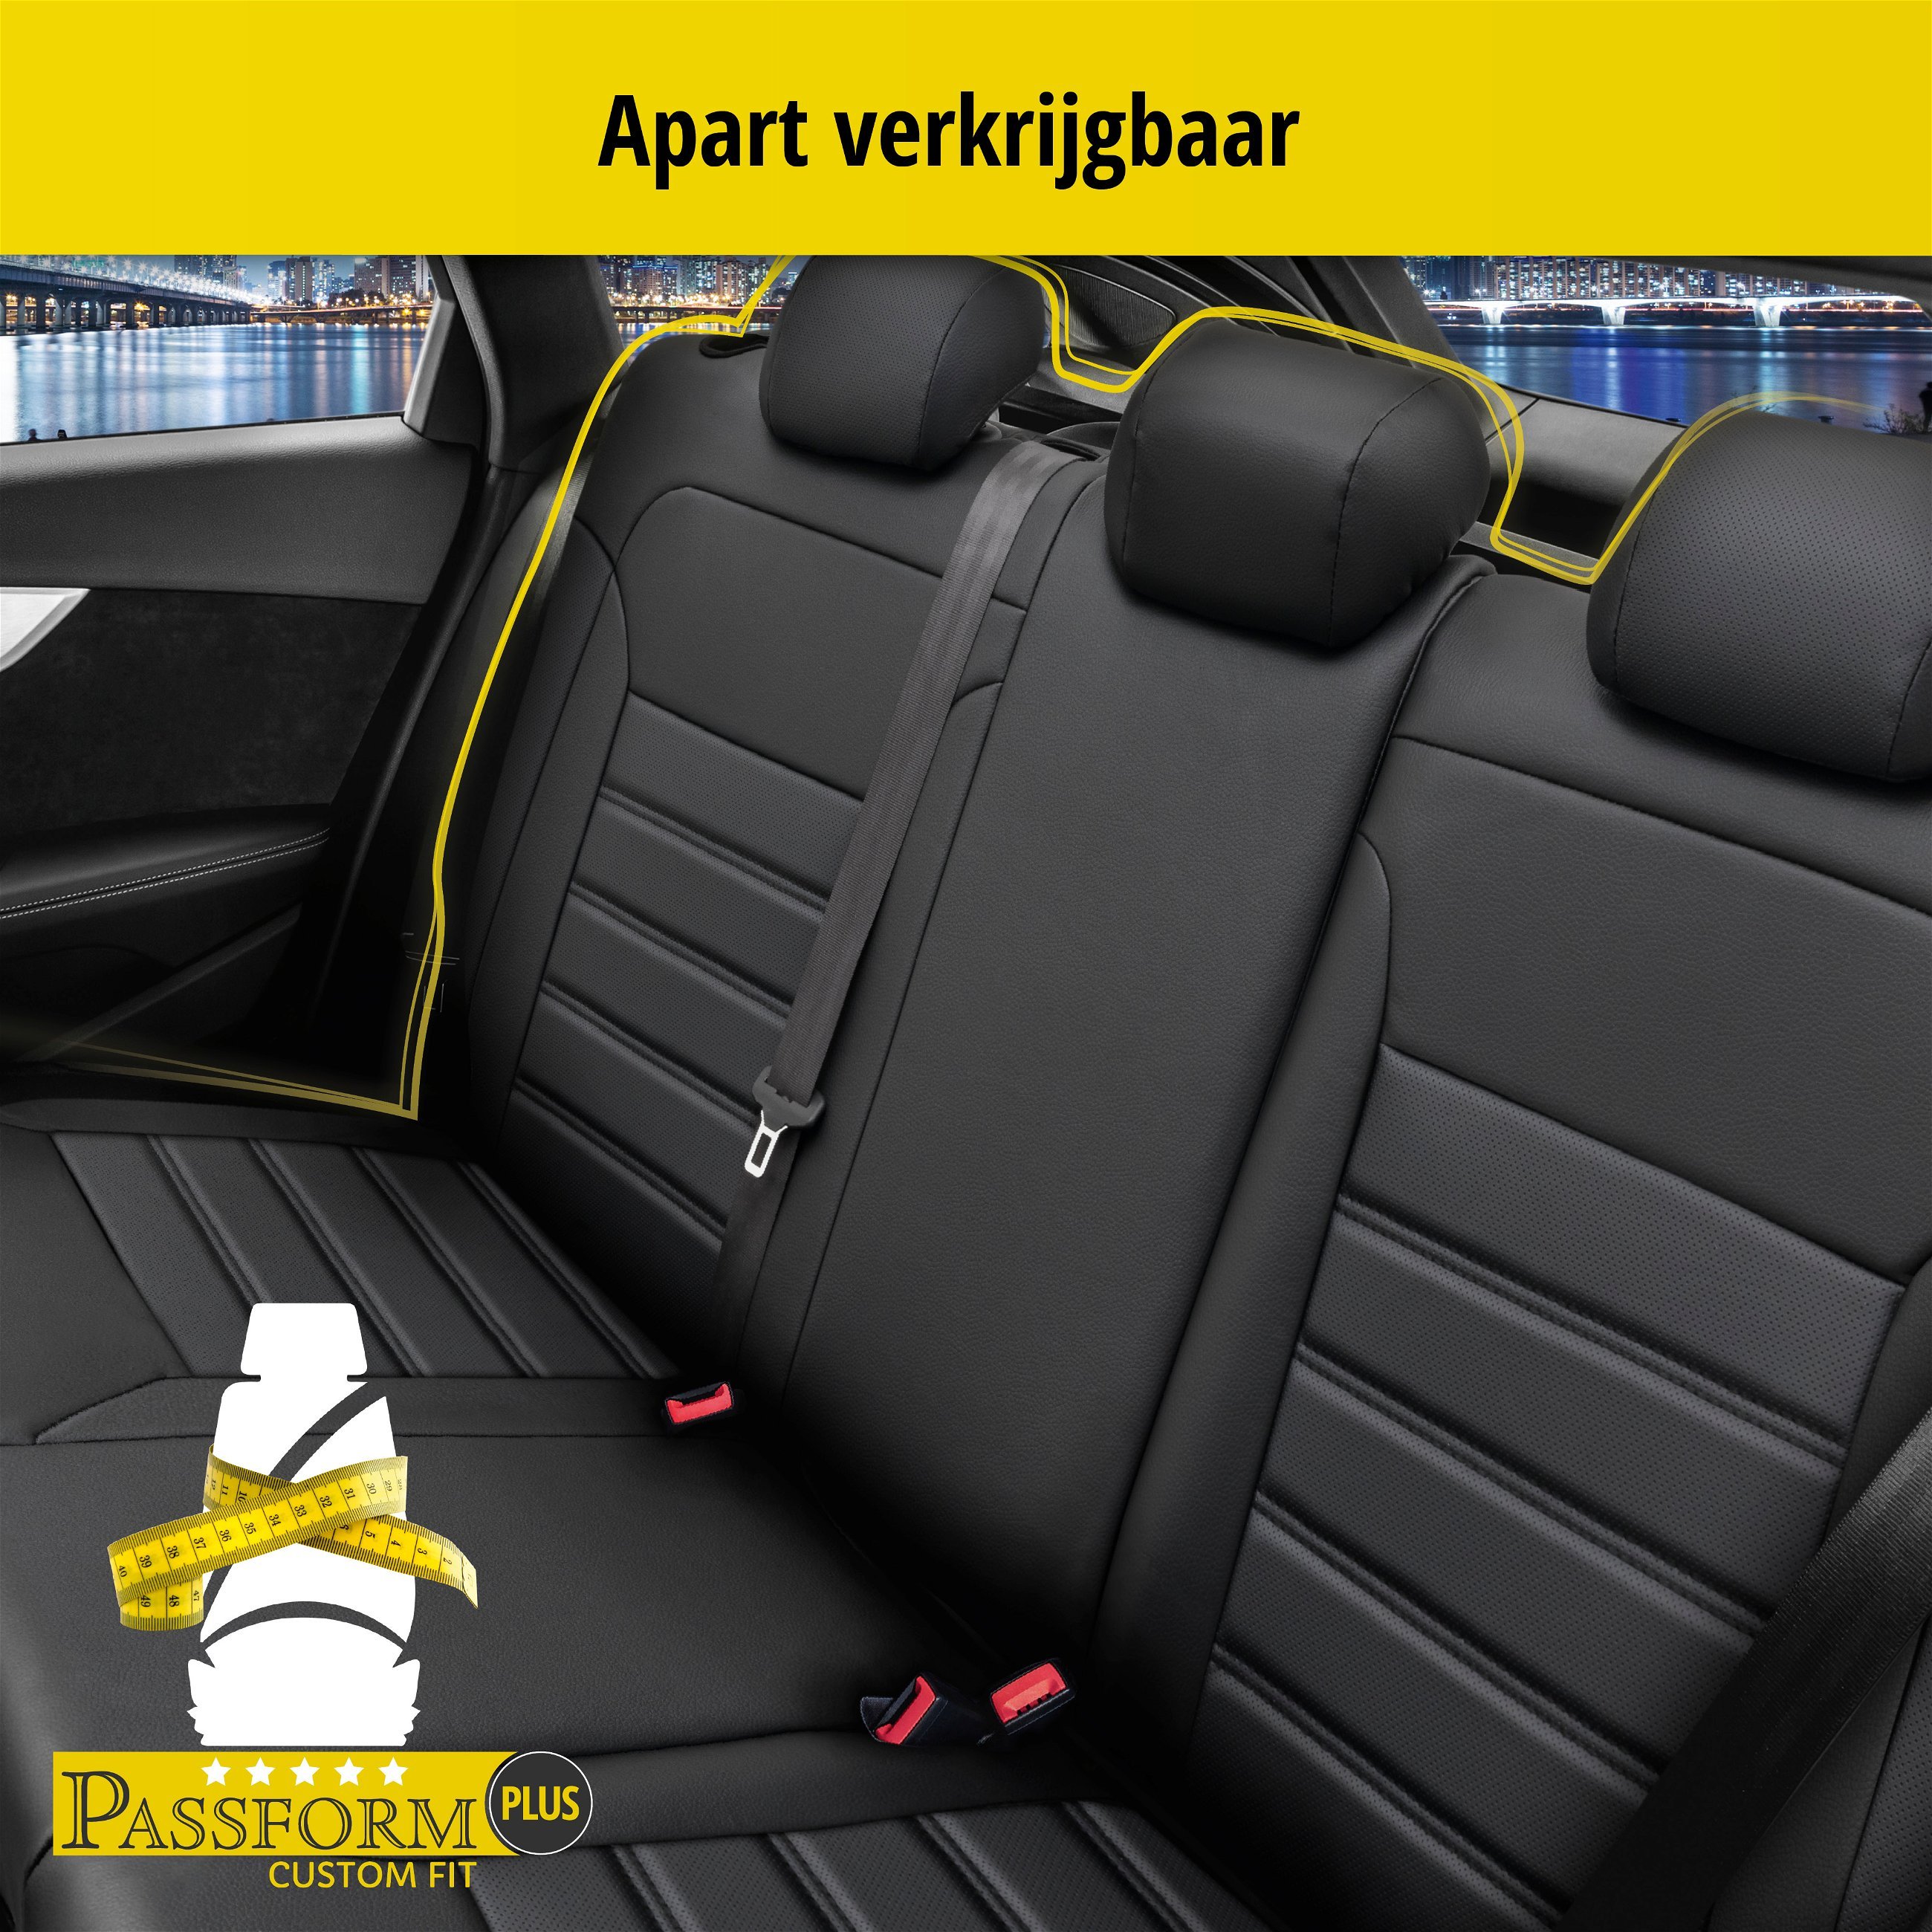 Auto stoelbekleding Robusto geschikt voor VW Golf VII 08/2012-03/2021, VW Golf VII Variant 08/2013-Vandaag, 2 enkele zetelhoezen voor sportzetels